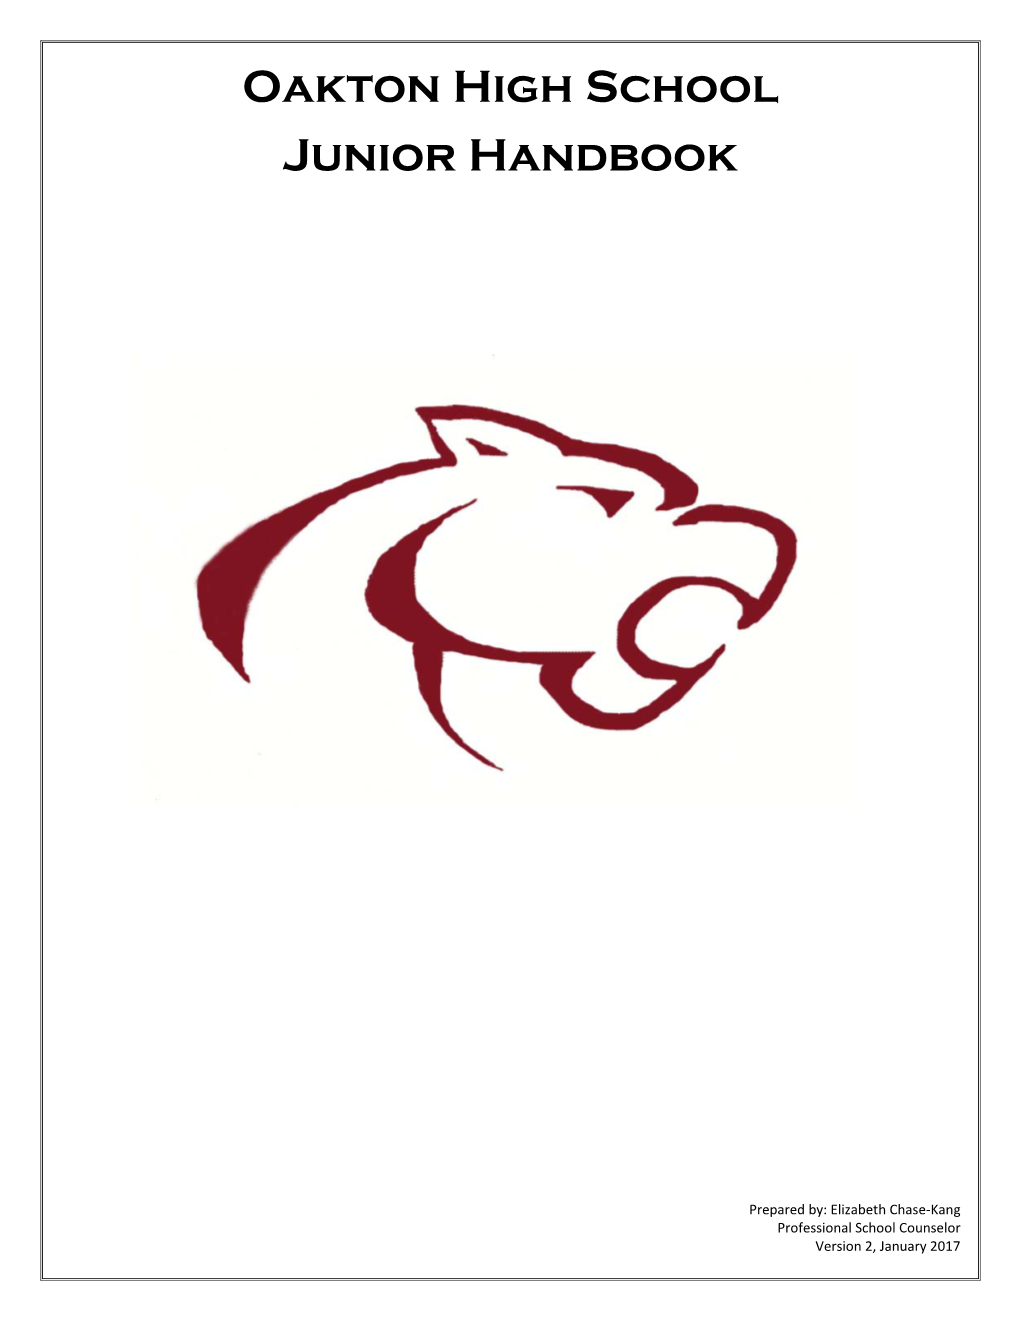 Oakton High School Junior Handbook